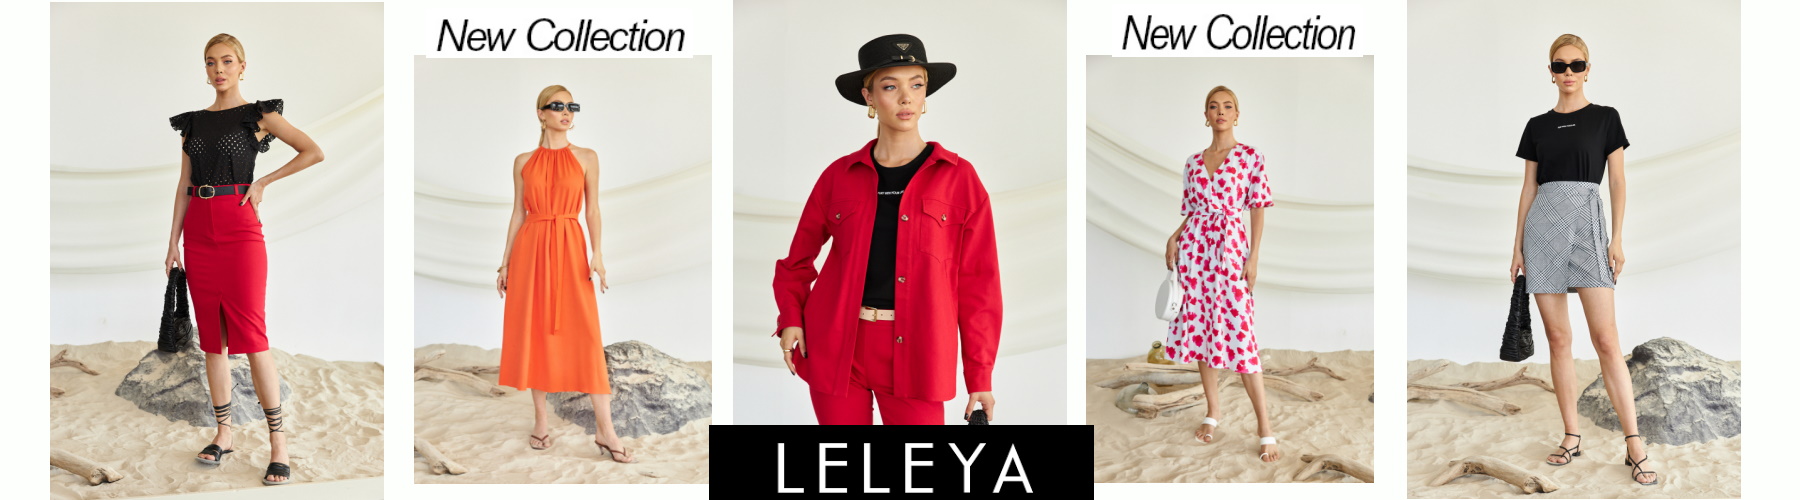 L E L E Y A - стильная, практичная и недорогая женская одежда!НОВАЯ КОЛЛЕКЦИЯ!